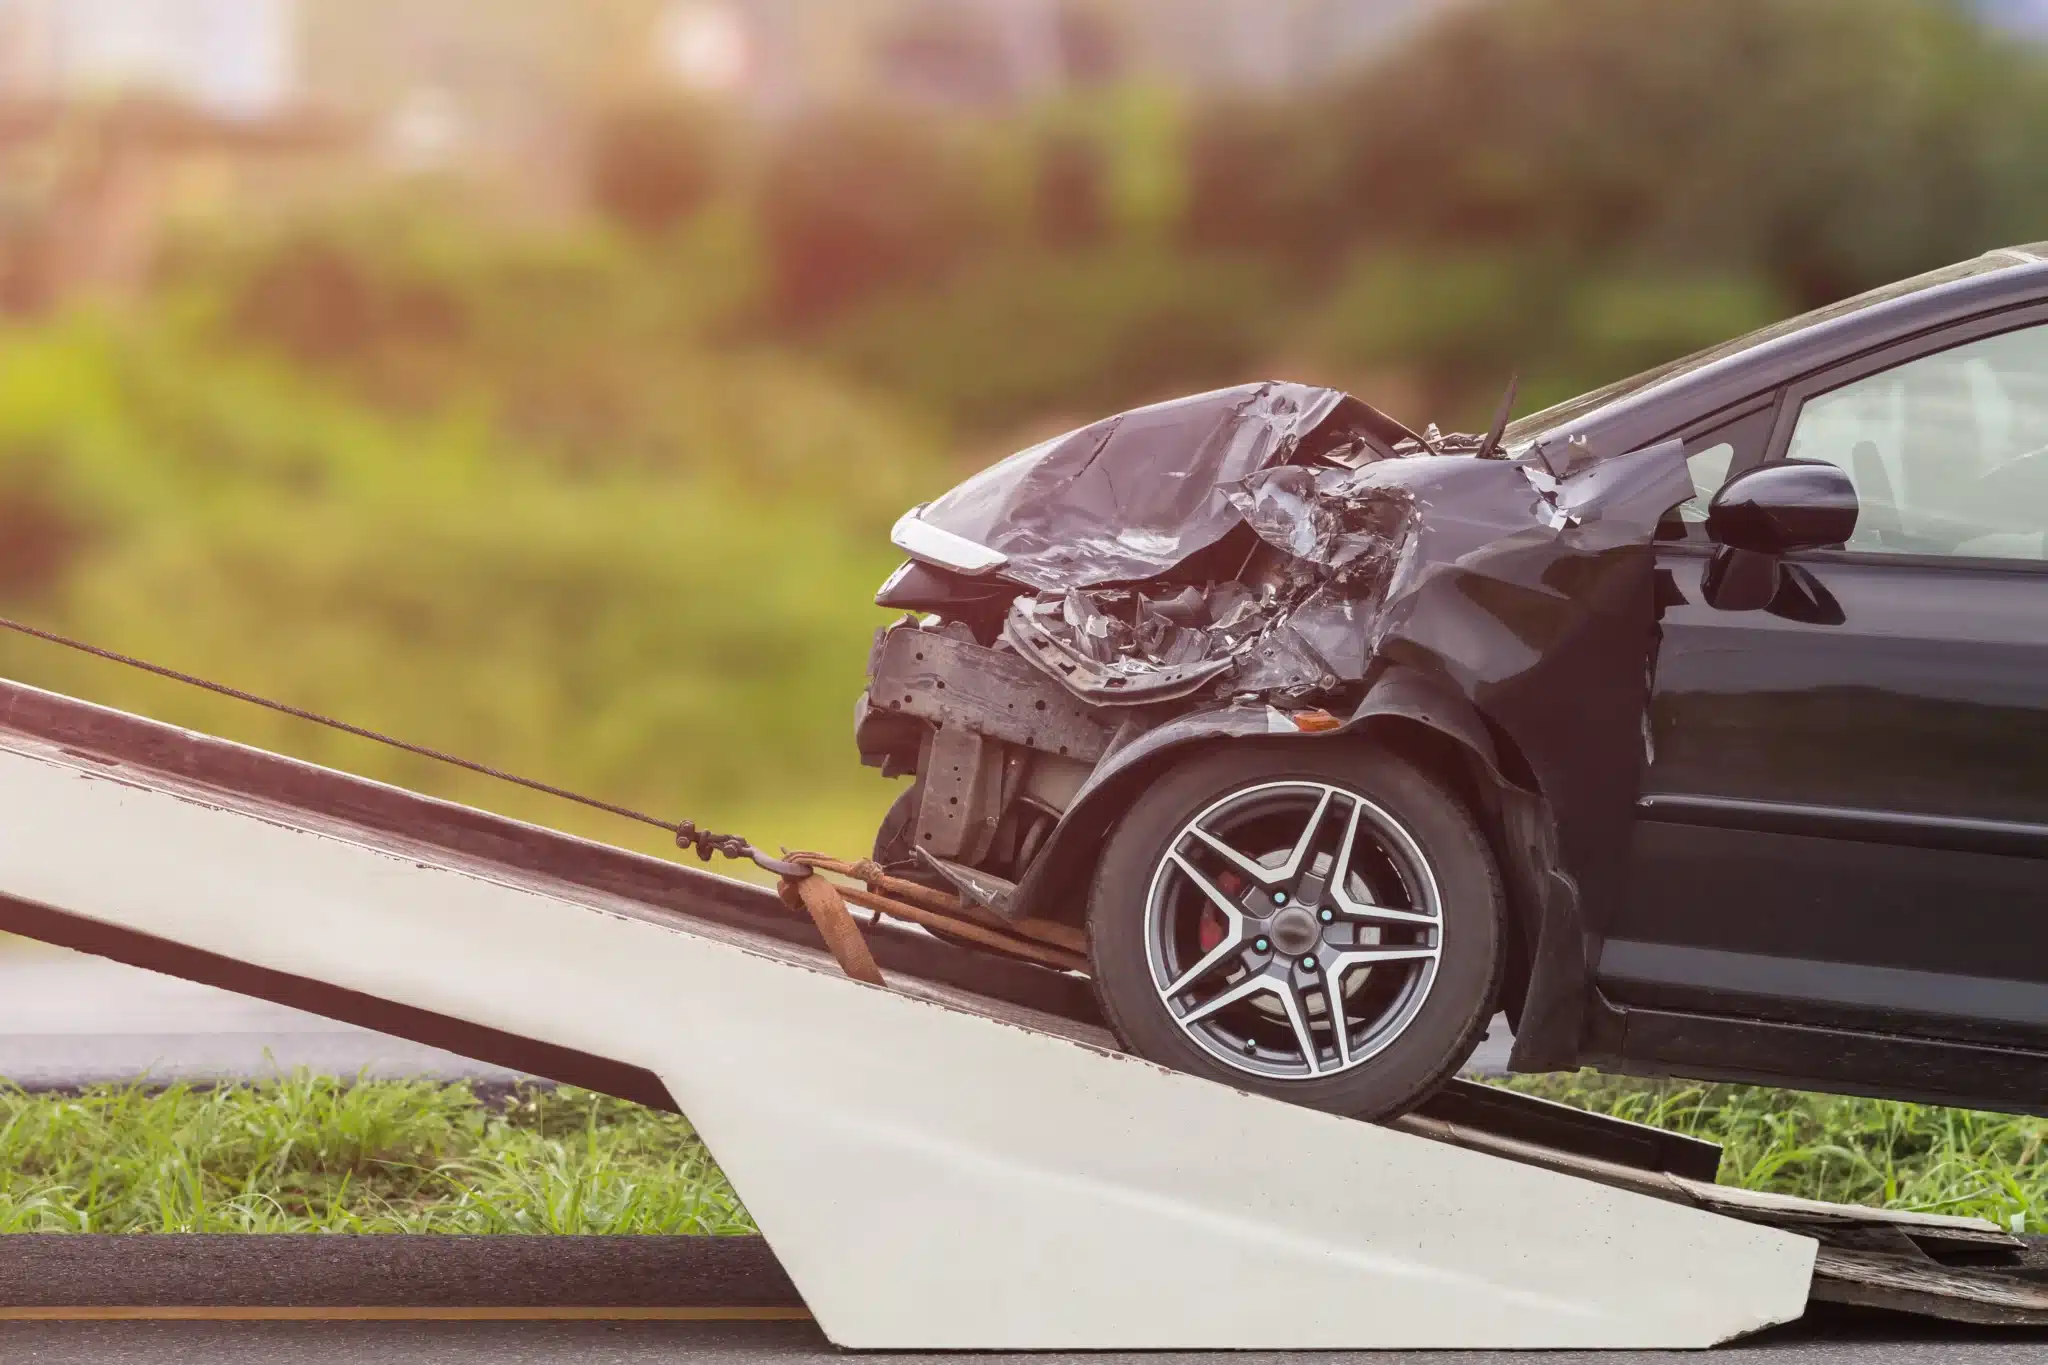 Beschädigtes Auto nach einem Unfall, das die Notwendigkeit einer Vollkaskoversicherung zeigt.